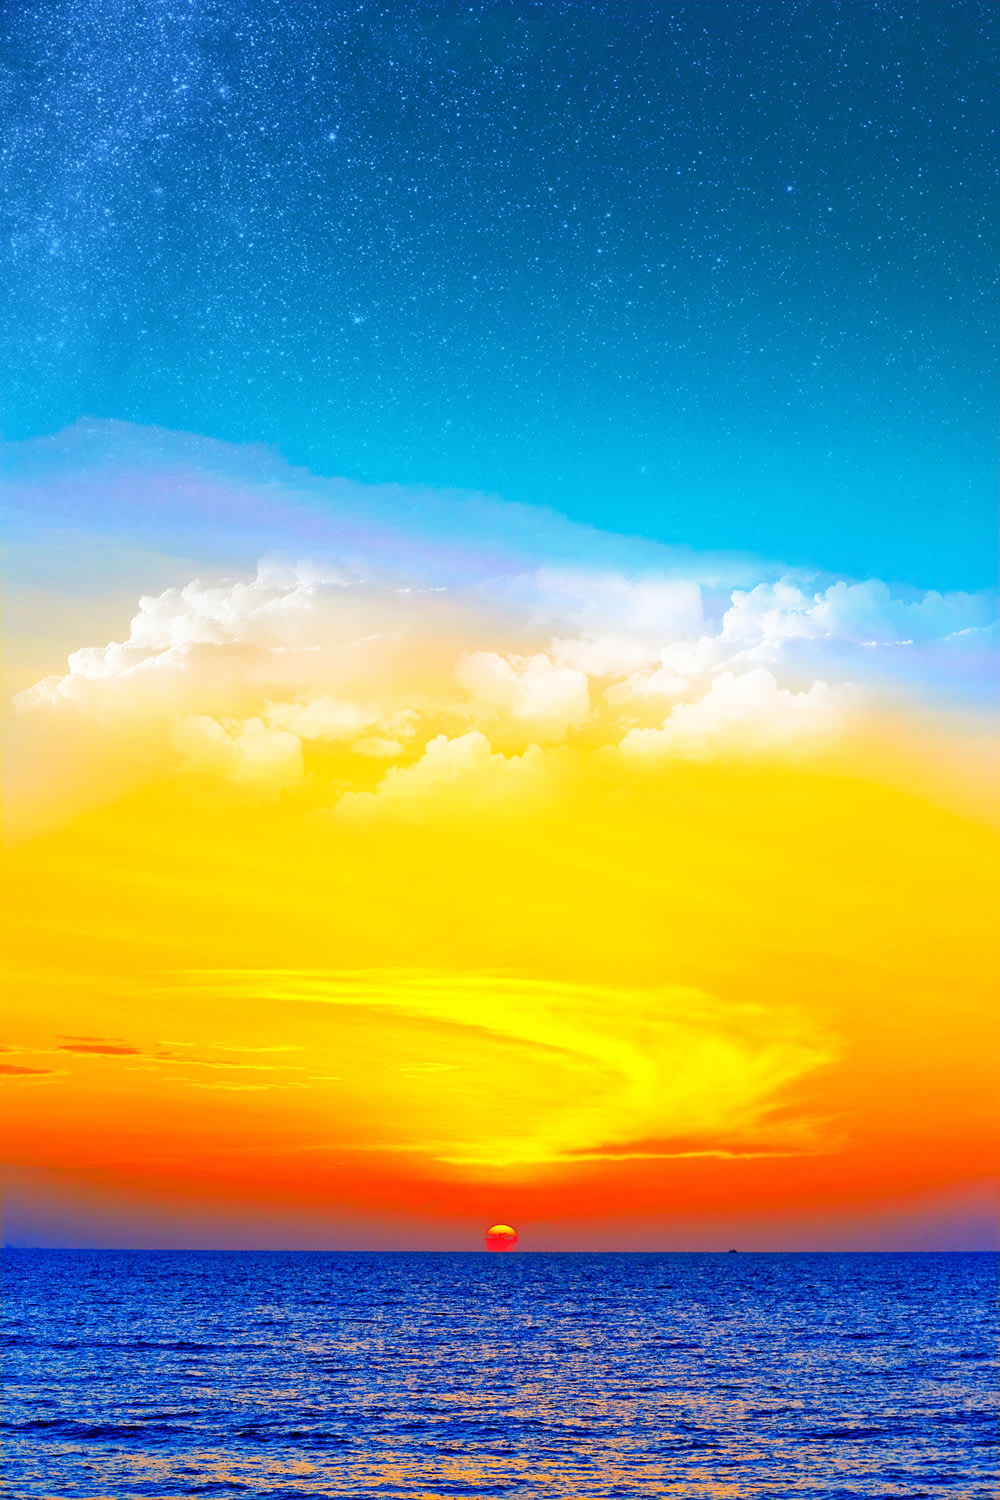 Mar azul sob o céu azul, branco e laranja durante o papel de parede digital do pôr do sol